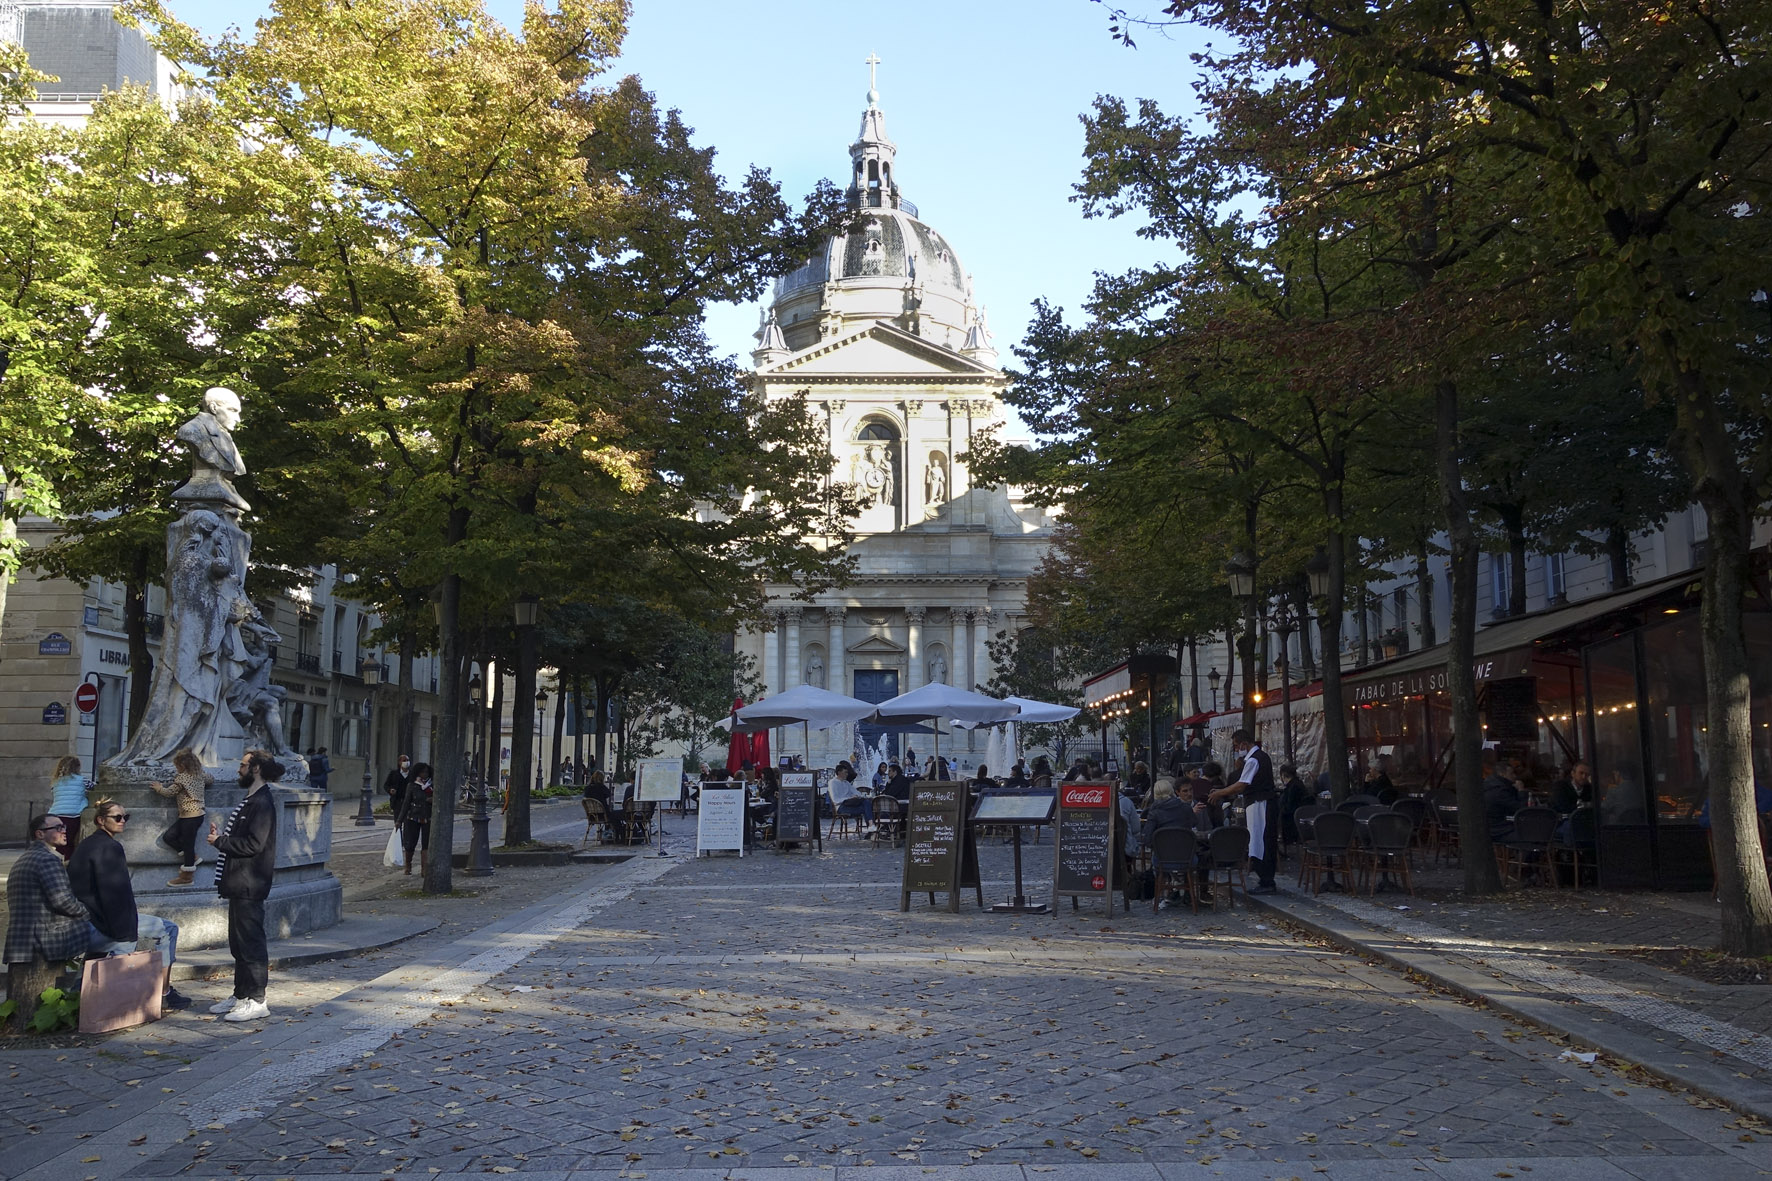 De la place de la Sorbonne à la place Saint-Michel : l’Université, l’histoire et les axes